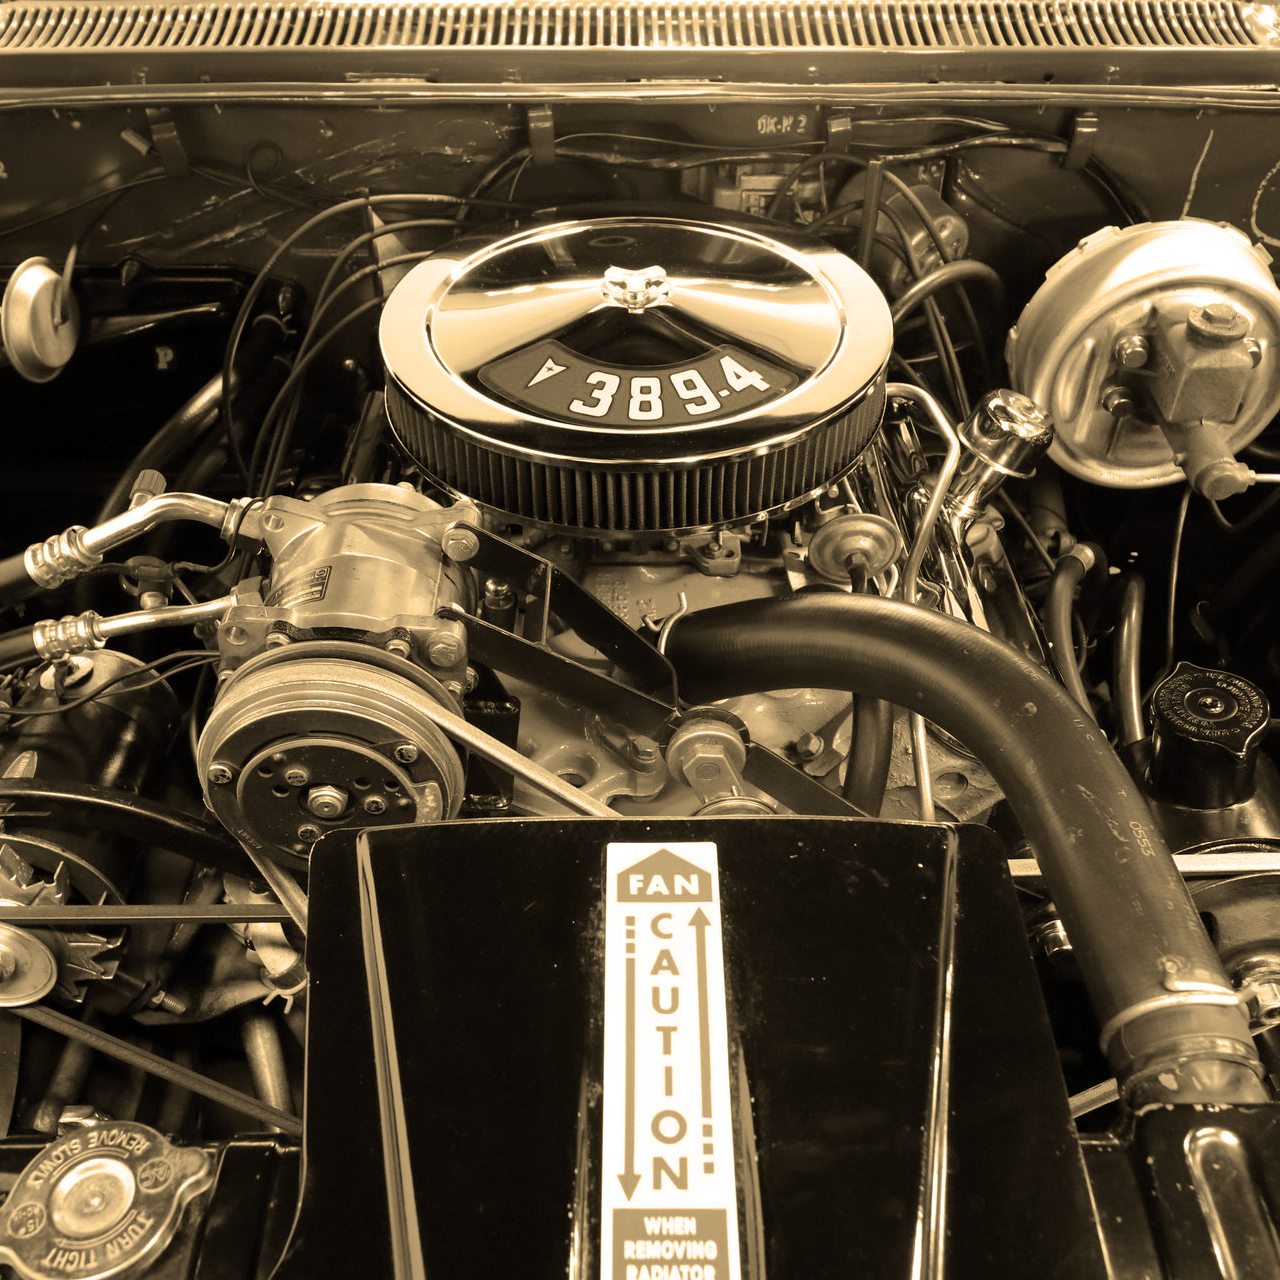 GR 0/1 | Engine, Grille & Radiator